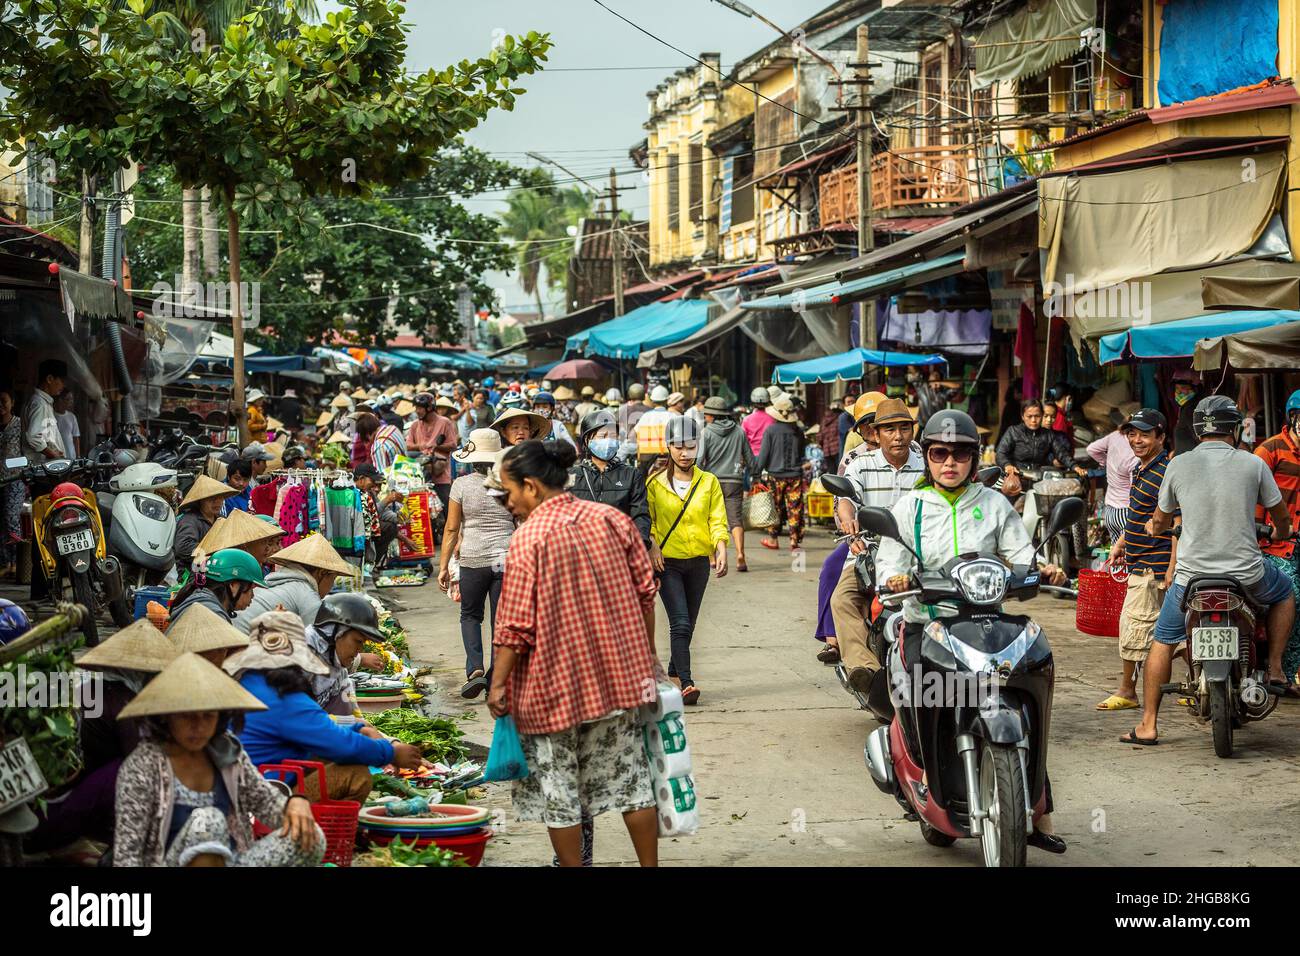 Los compradores y vendedores en la calle, Mercado Central, Hoi An, Vietnam Foto de stock